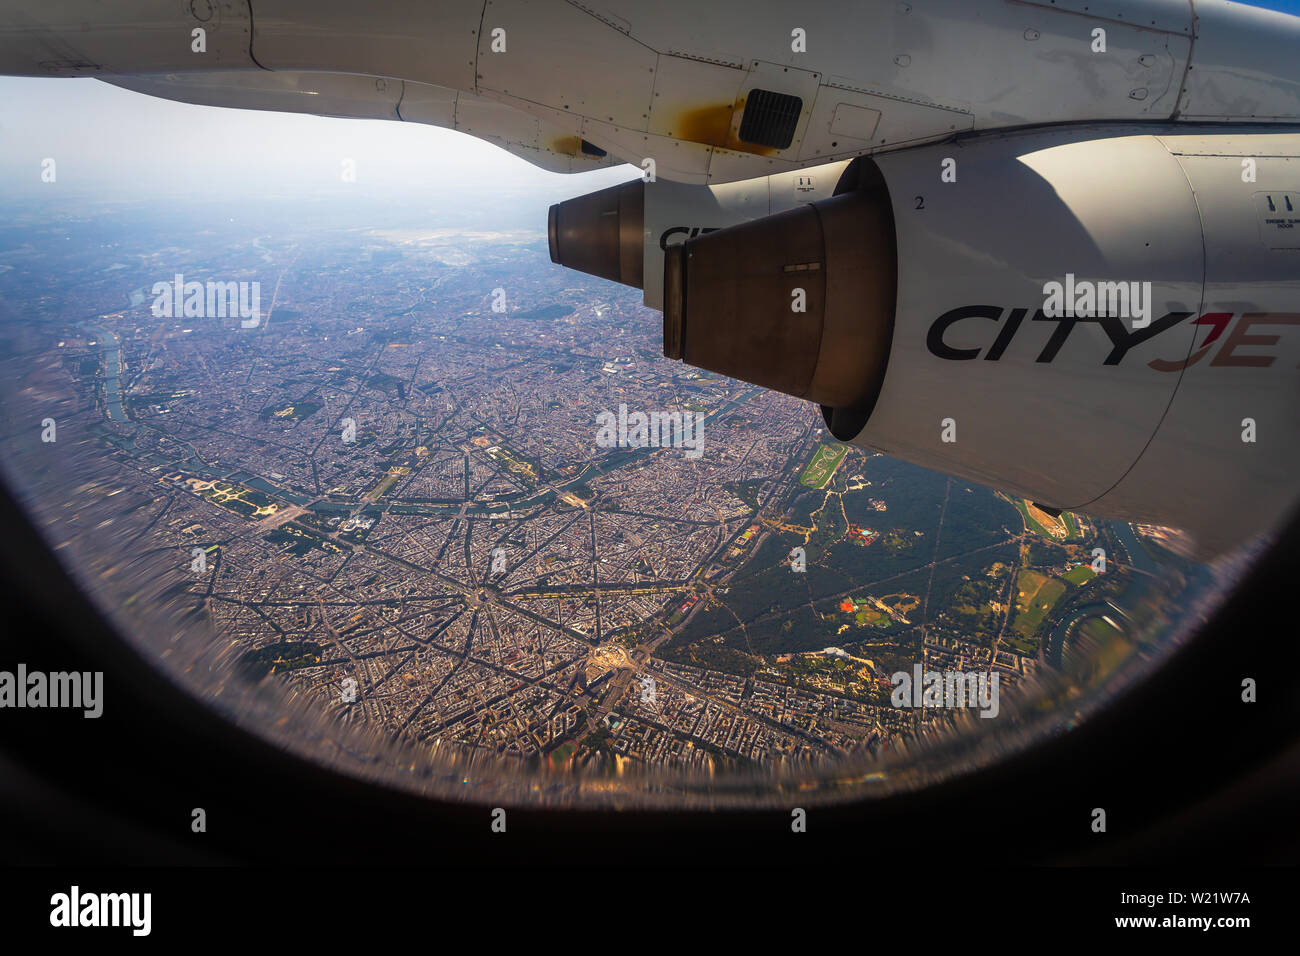 Cityjet over Paris in June 2019 Heatwave Stock Photo